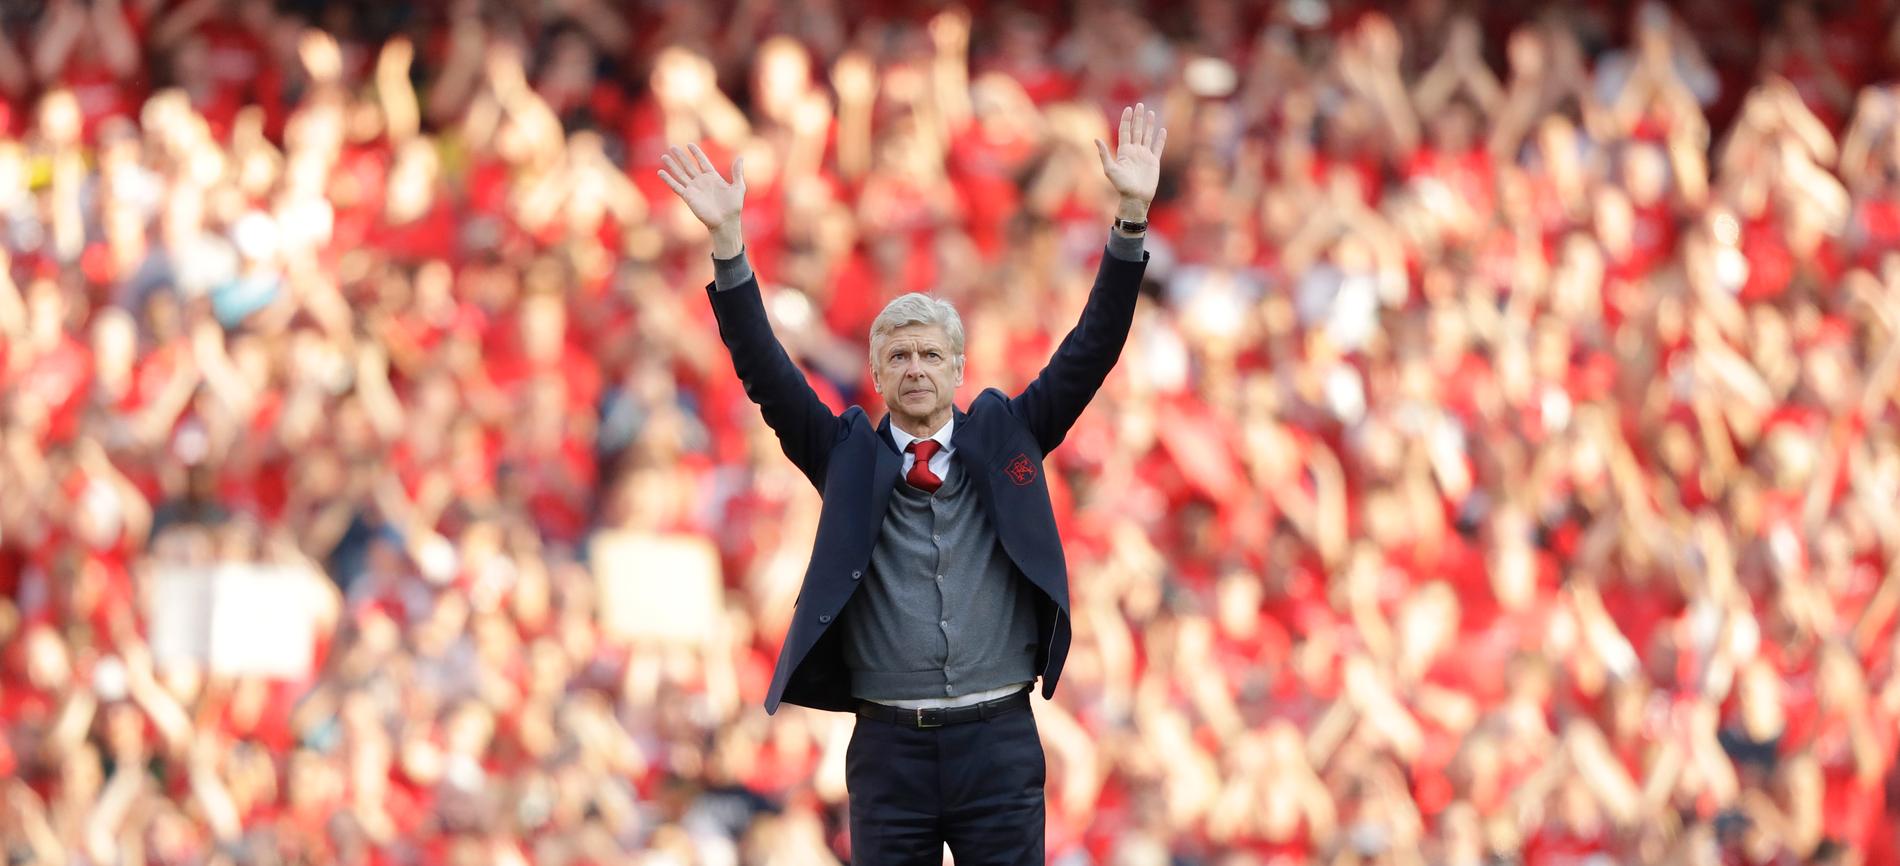 Wenger avslutade sin lång Arsenal-karriär efter 22 år i klubben